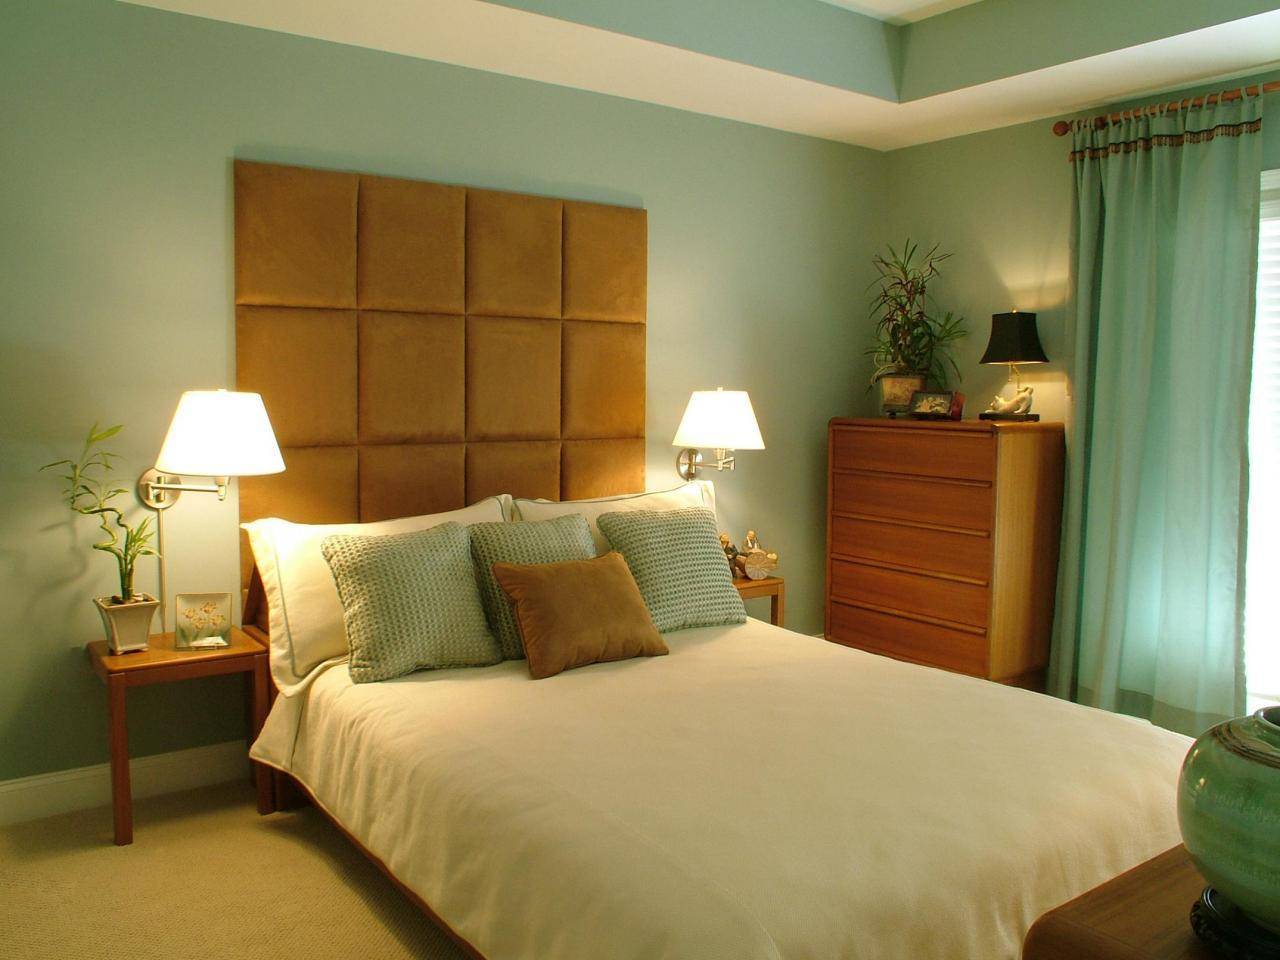 Спальня по фен-шуй: основные правила обустройства, расположение, цвета, мебель — полное руководство от а до я с фото